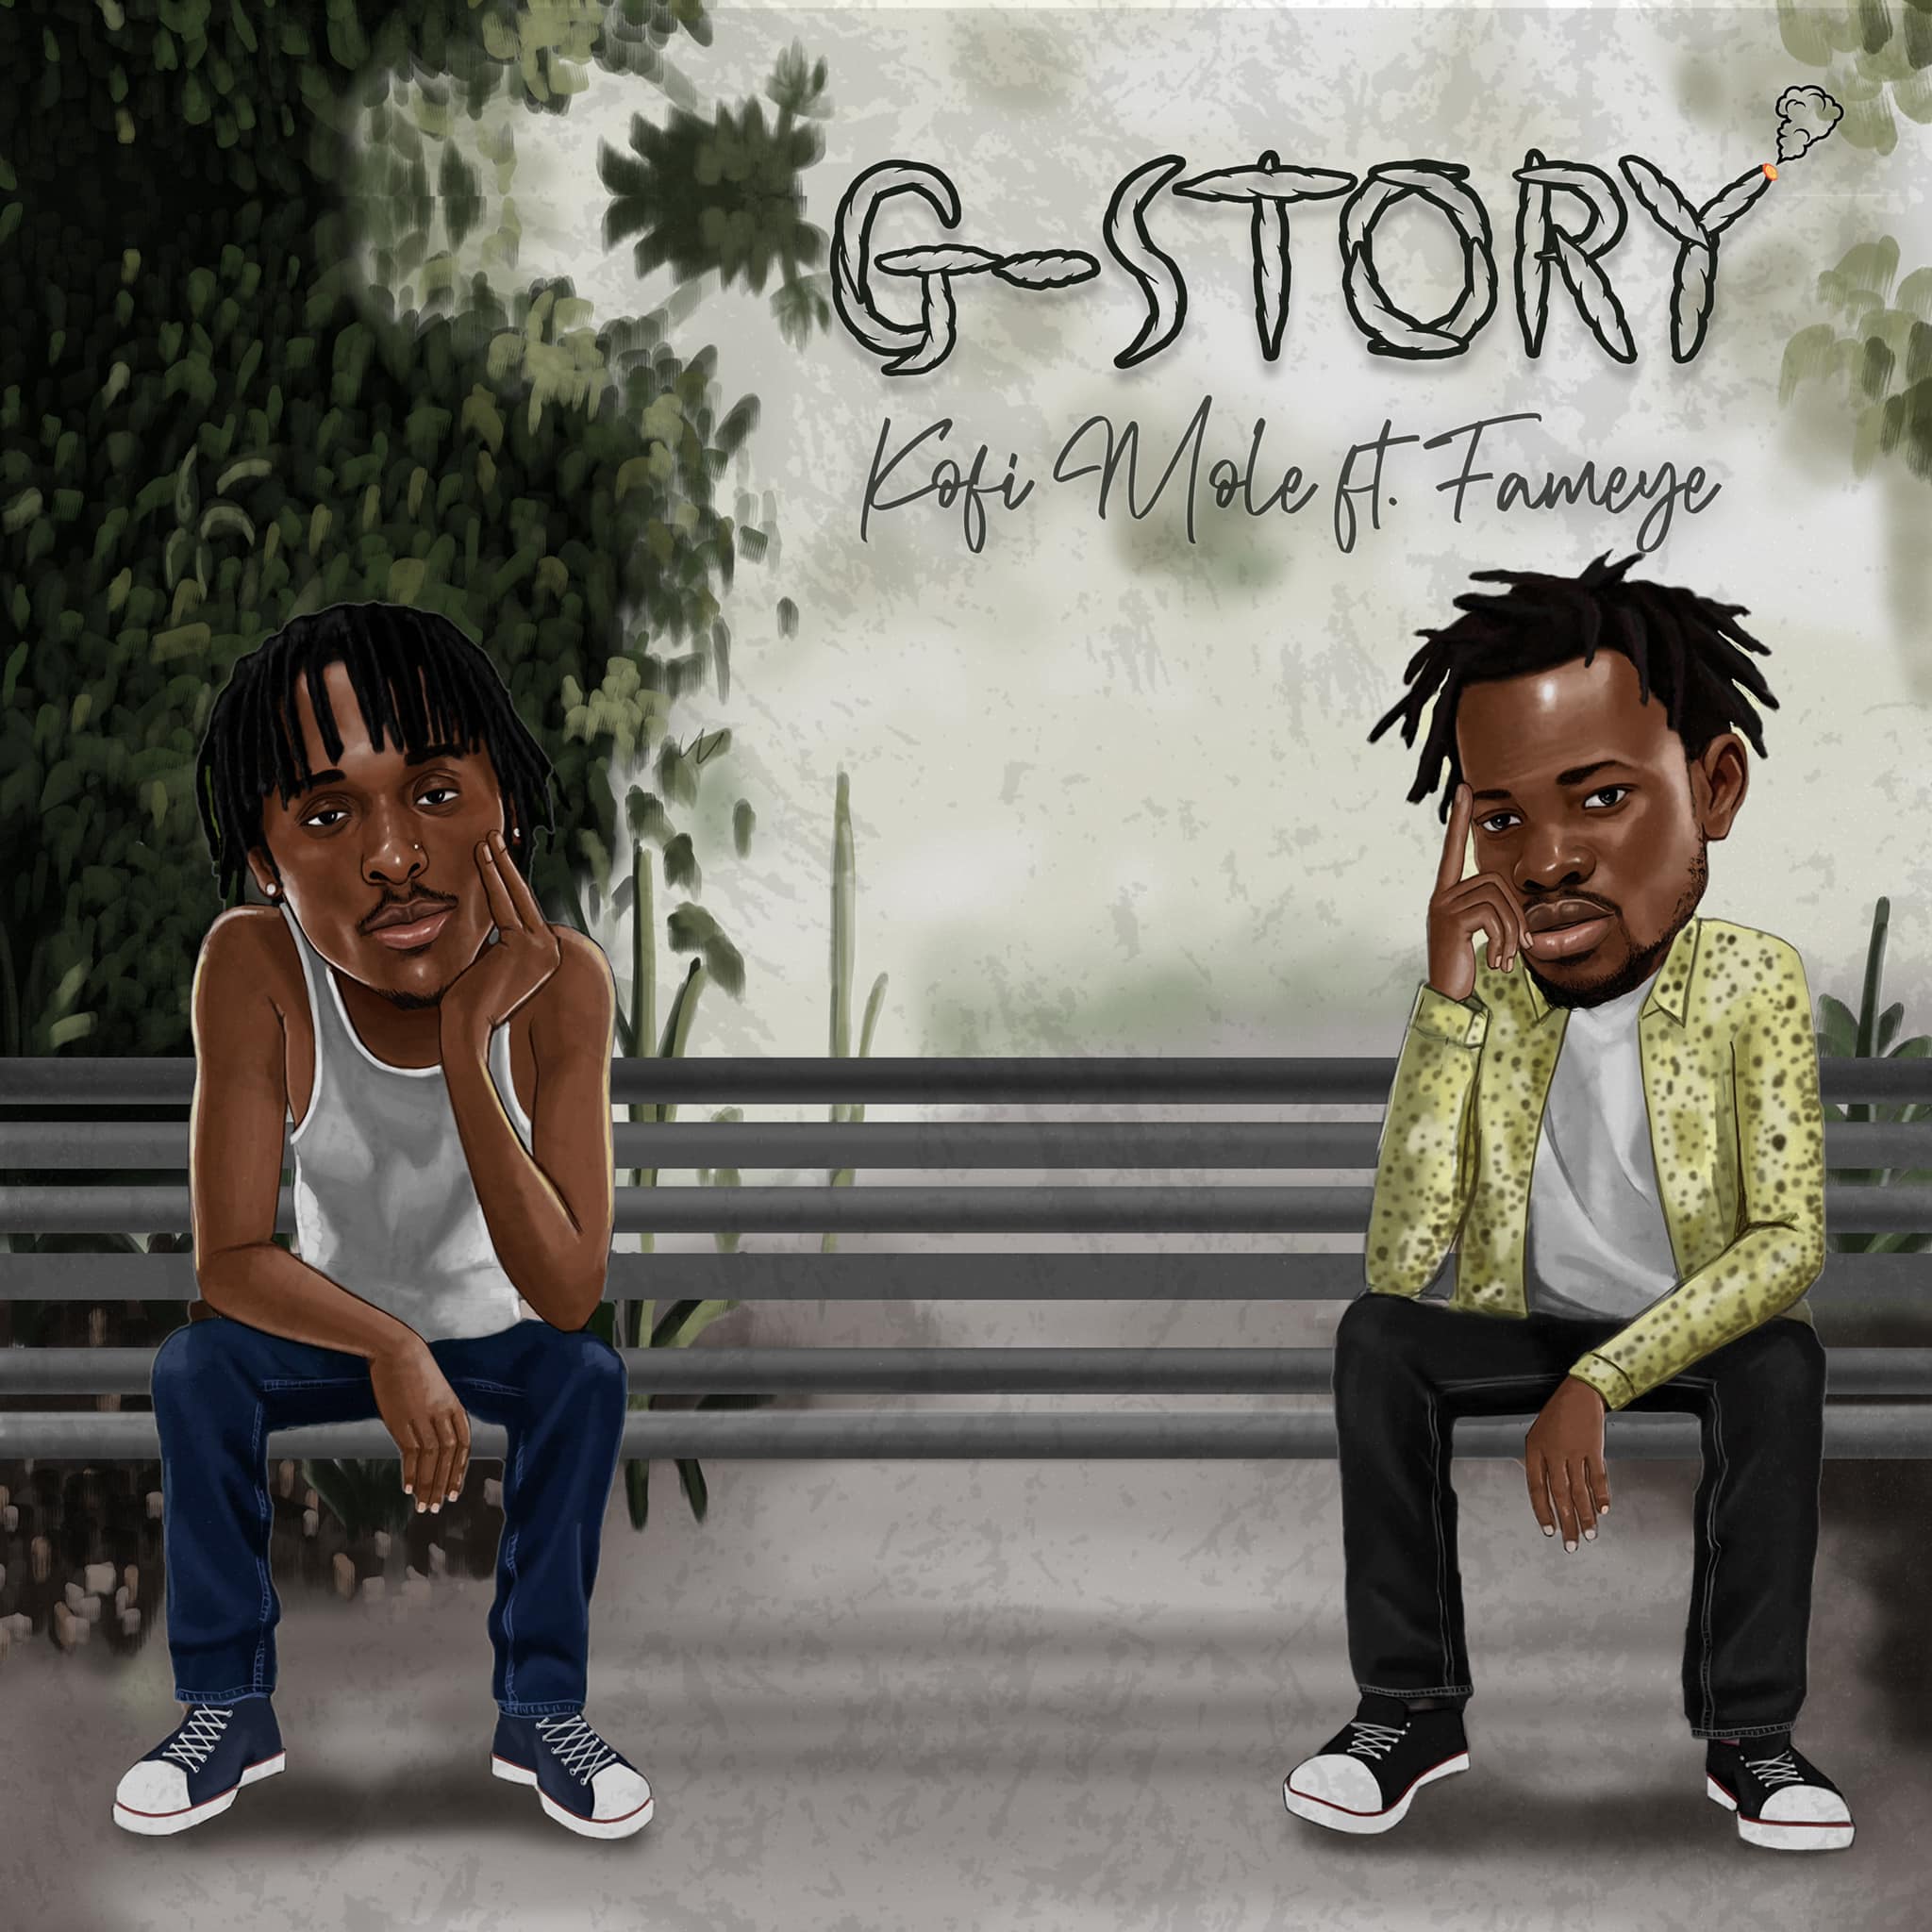 Kofi Mole Ft Fameye - G- Story